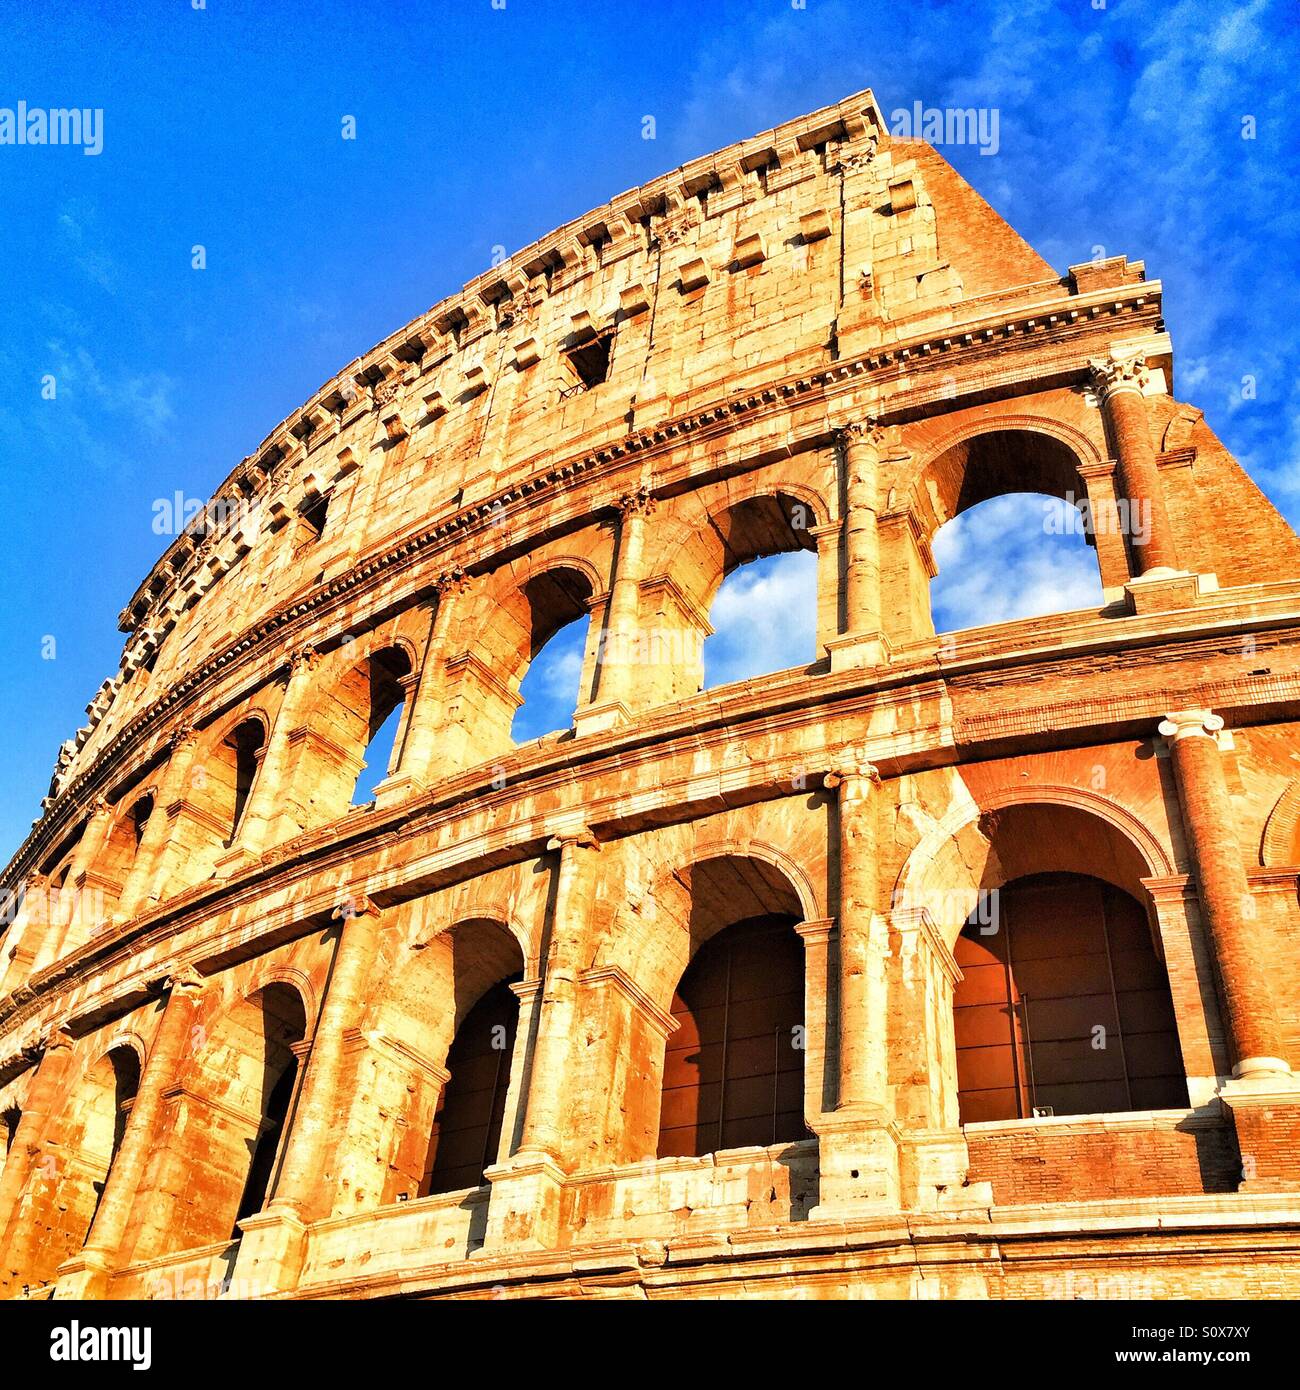 Colosseum in Rome Stock Photo